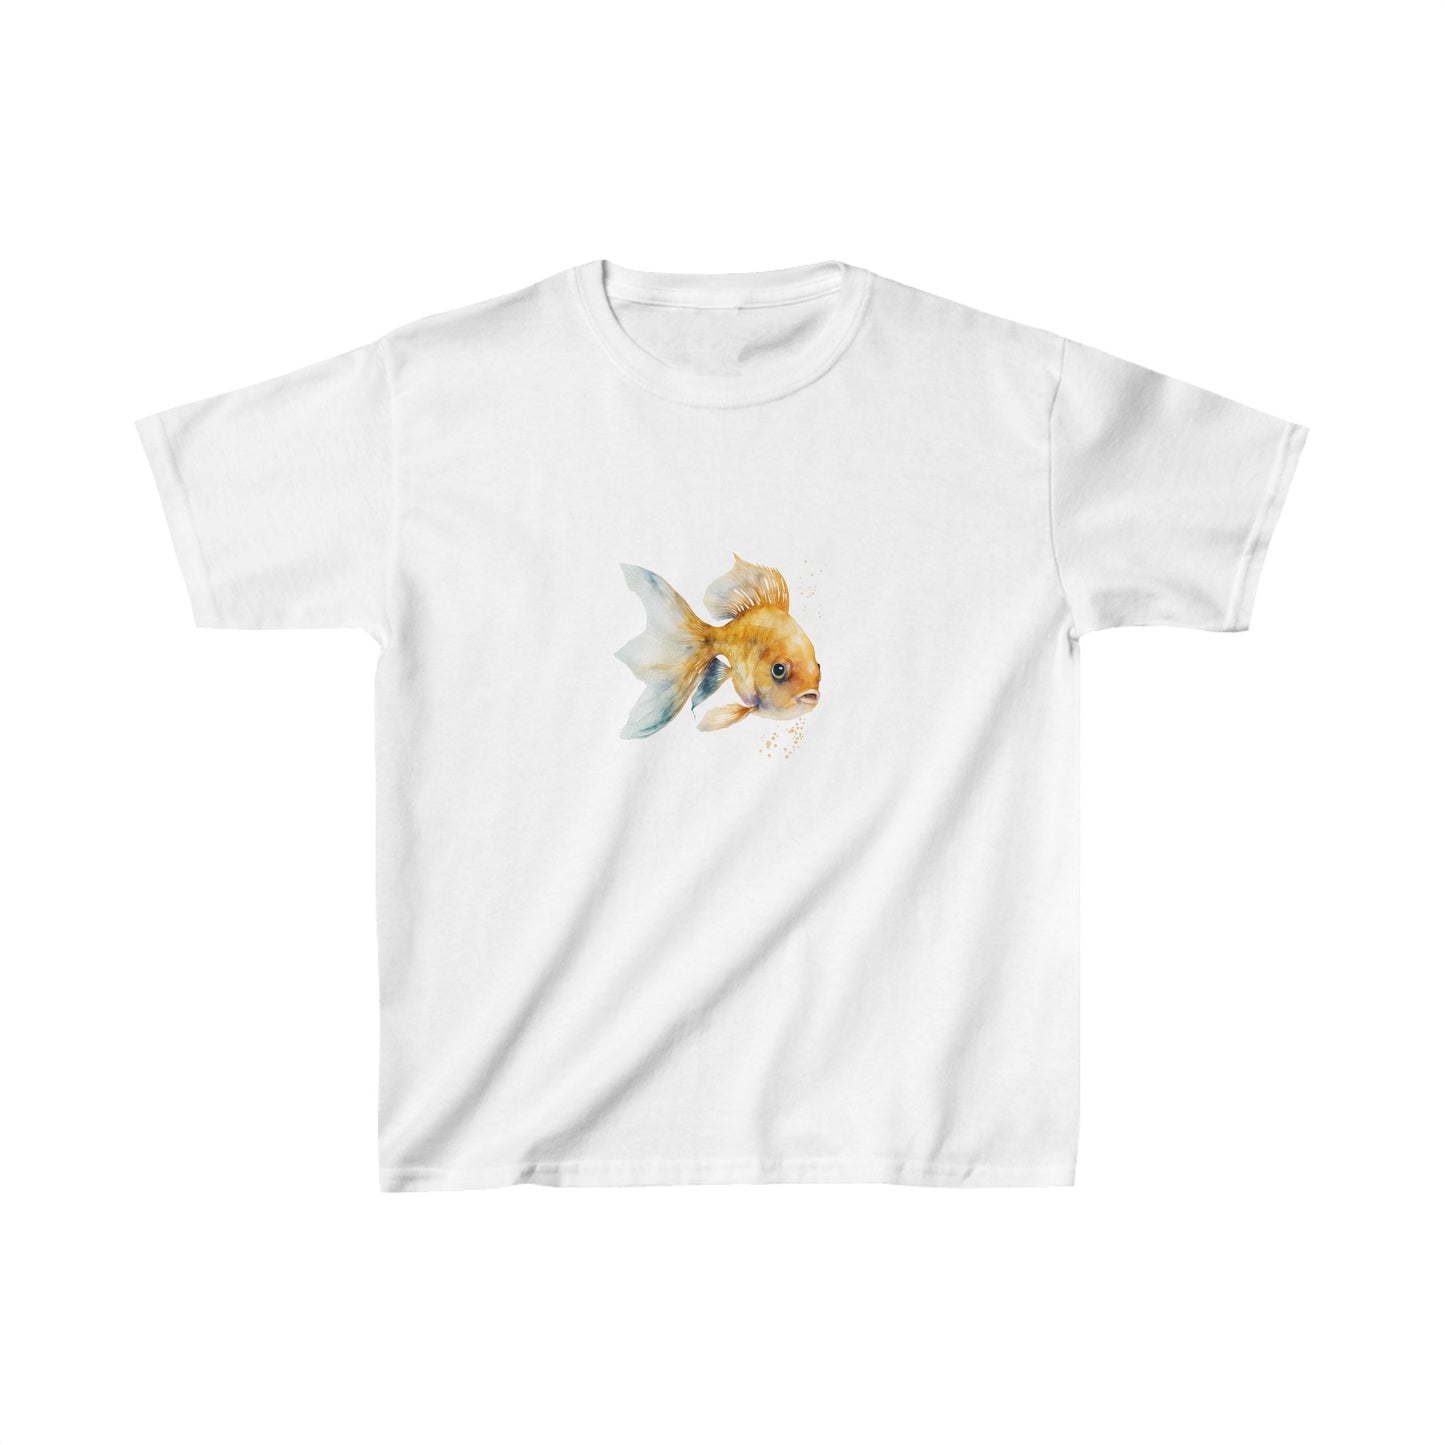 Women's Baby Tee Retro Goldfish Shirt.